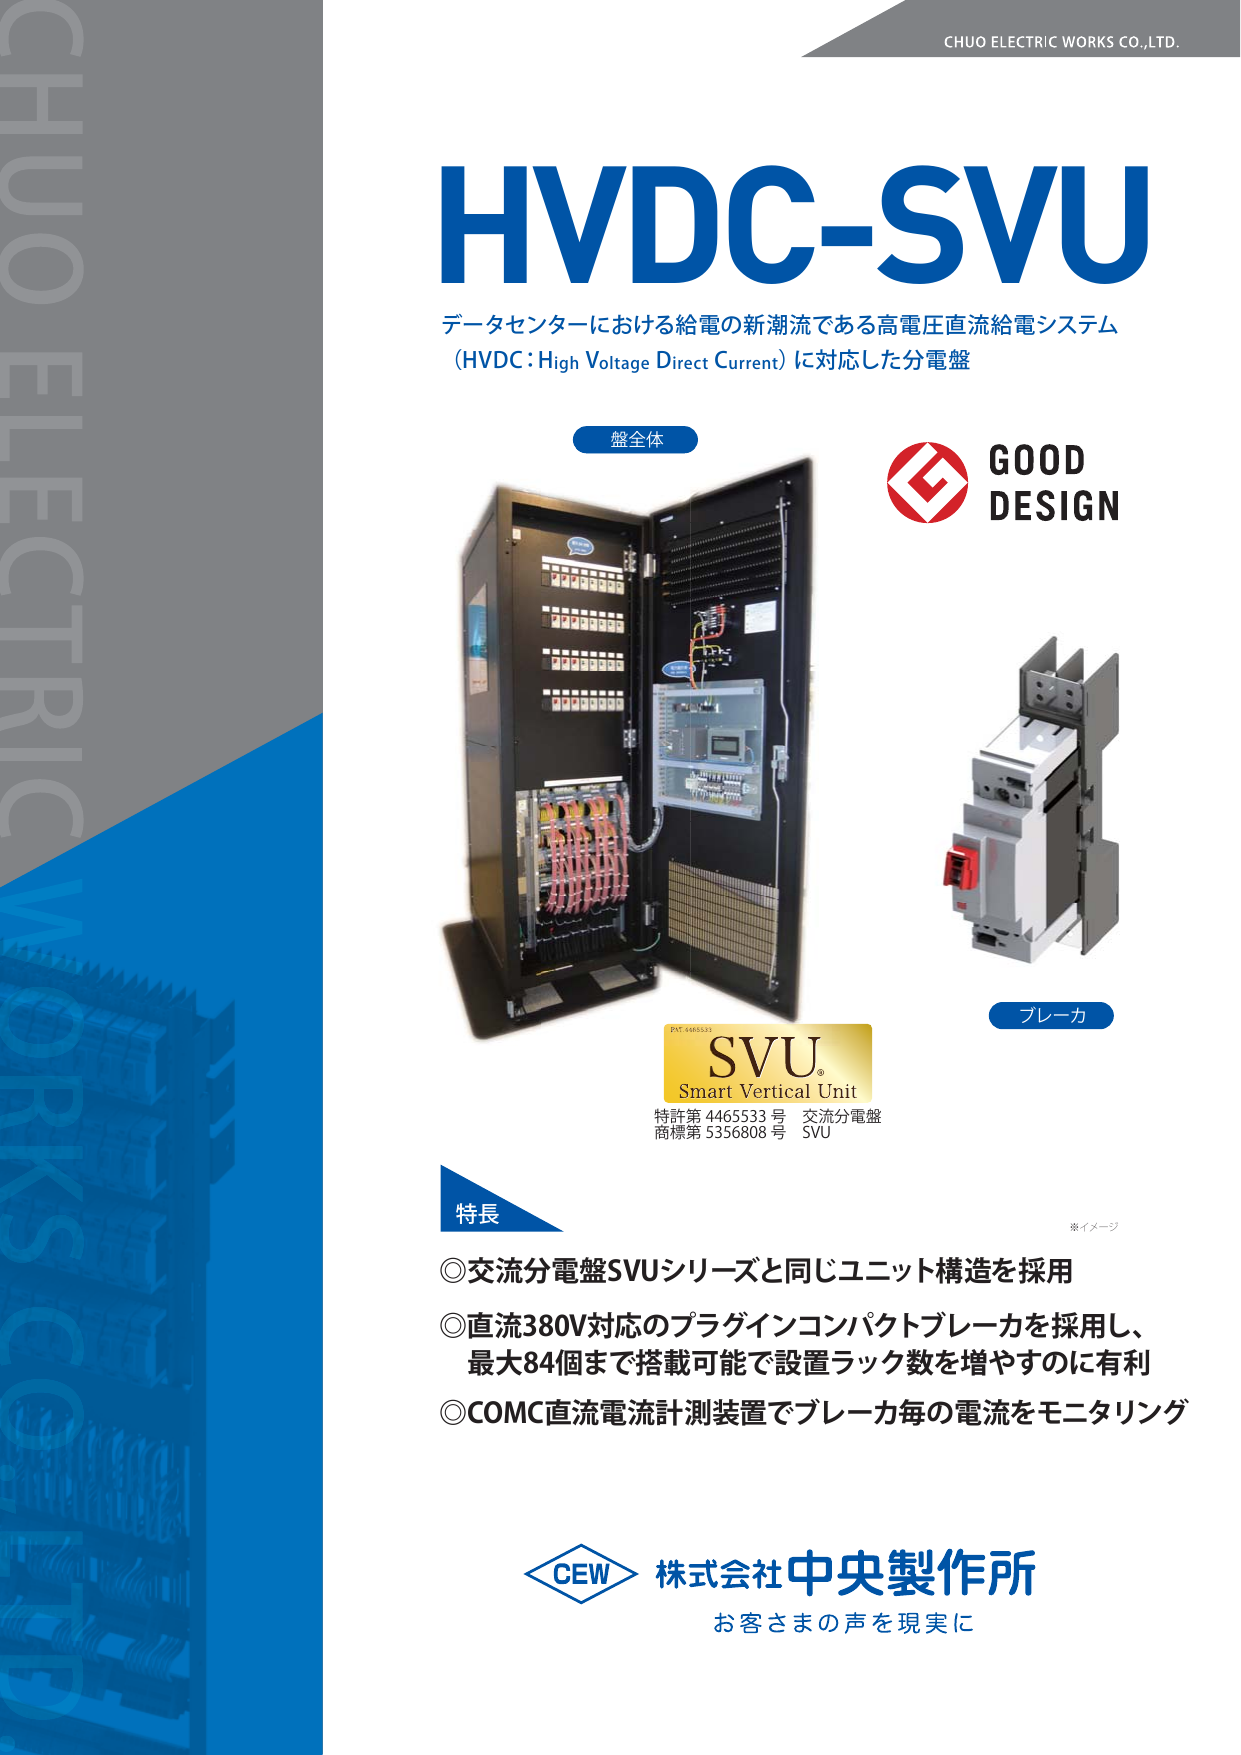 高電圧直流給電システム(HVDC)に対応した分電盤 HVDC-SVU（株式会社